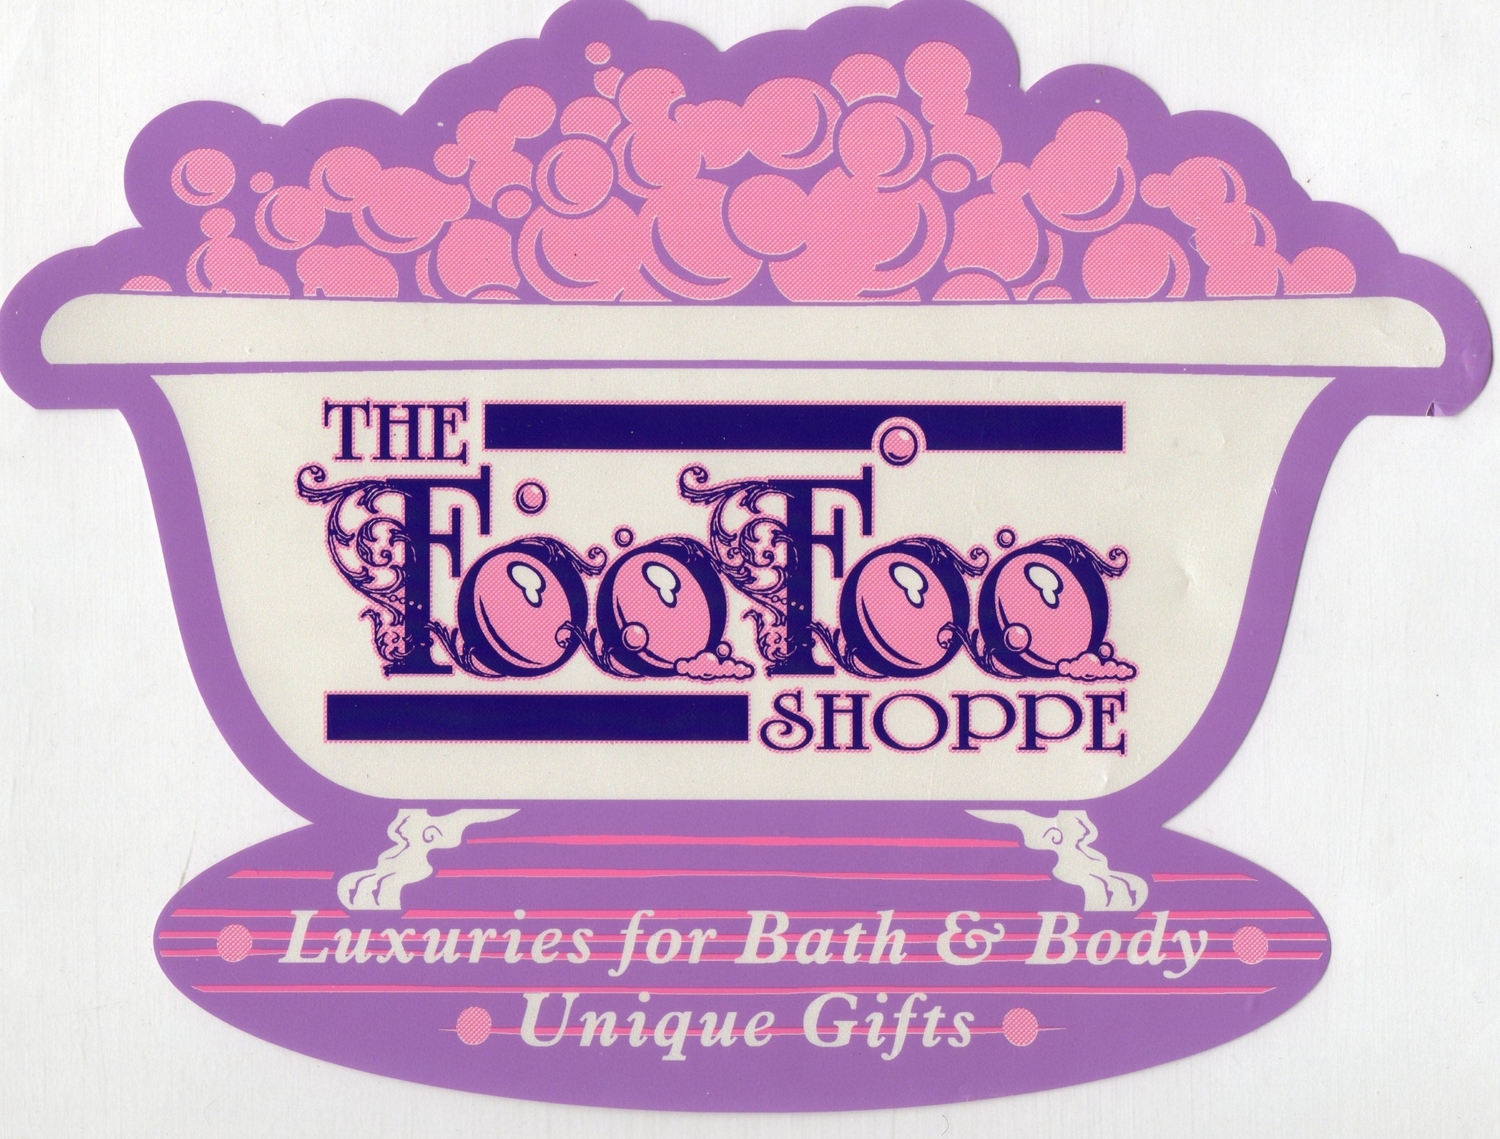 The Foo Foo Shoppe